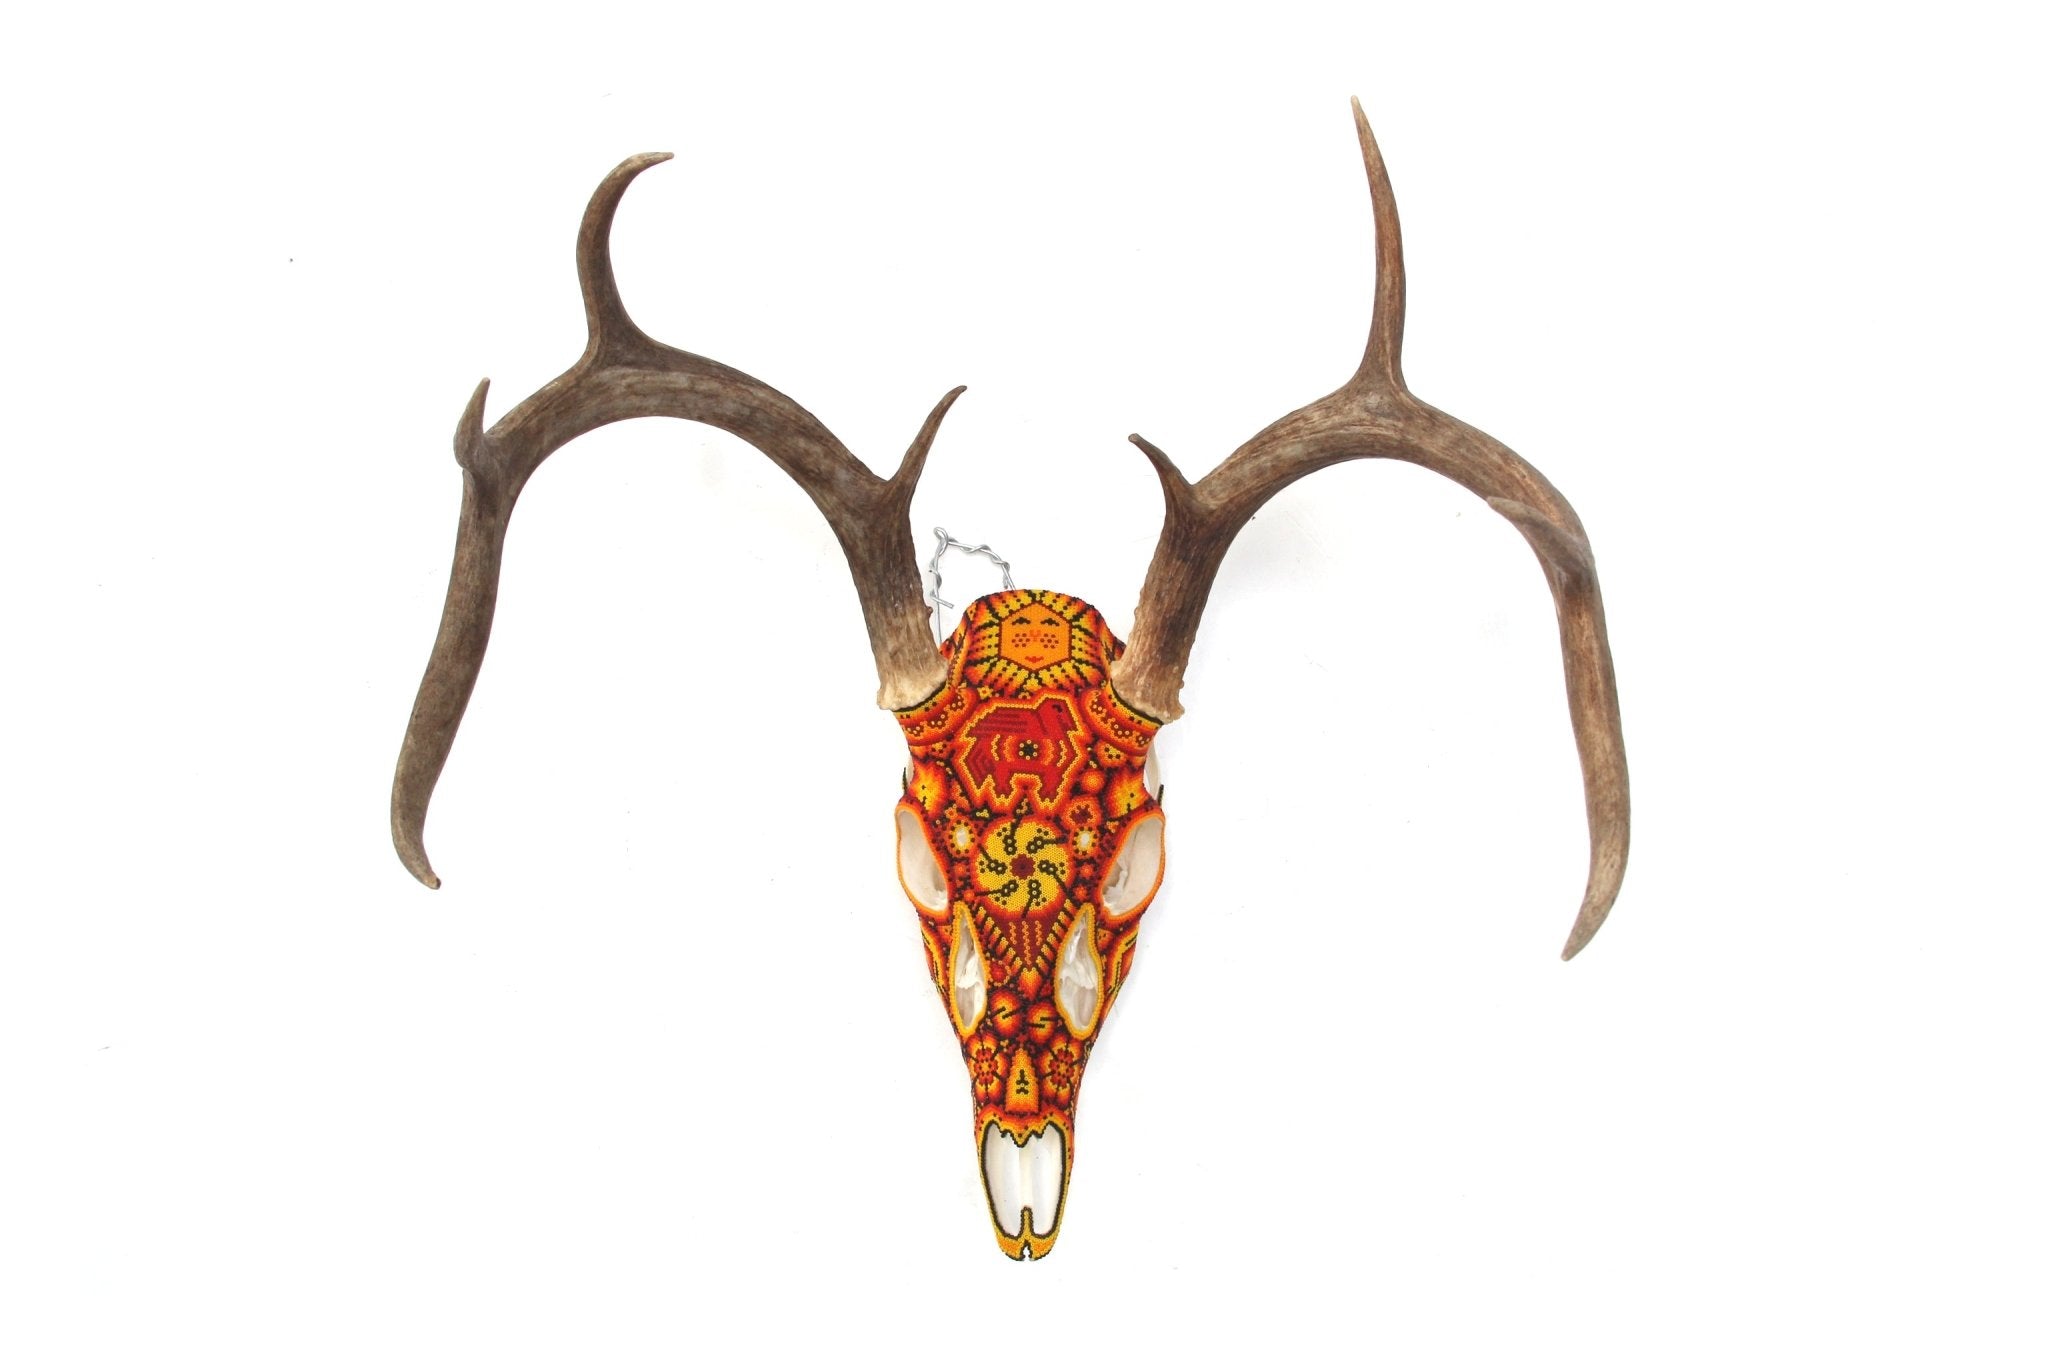 ウイチョル族の鹿の頭蓋骨 - Xunuri - ウイチョル族のアート - マラカメ